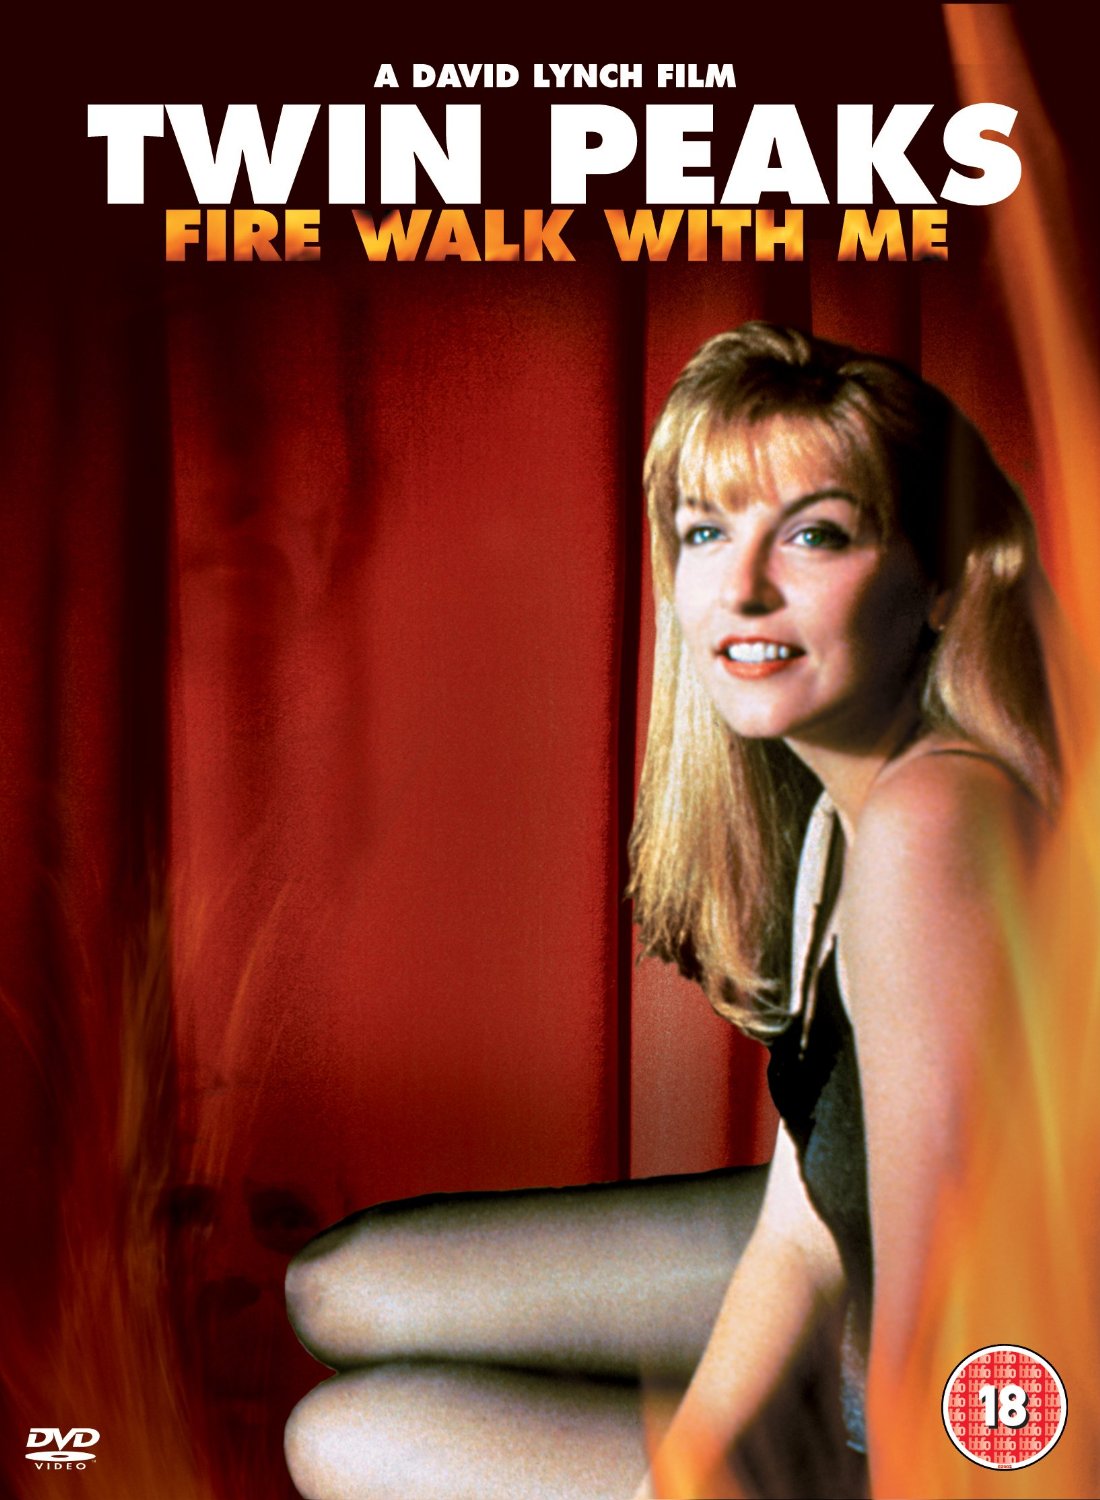 DVD: Twin Peaks: Fire Walk With Me (1992)